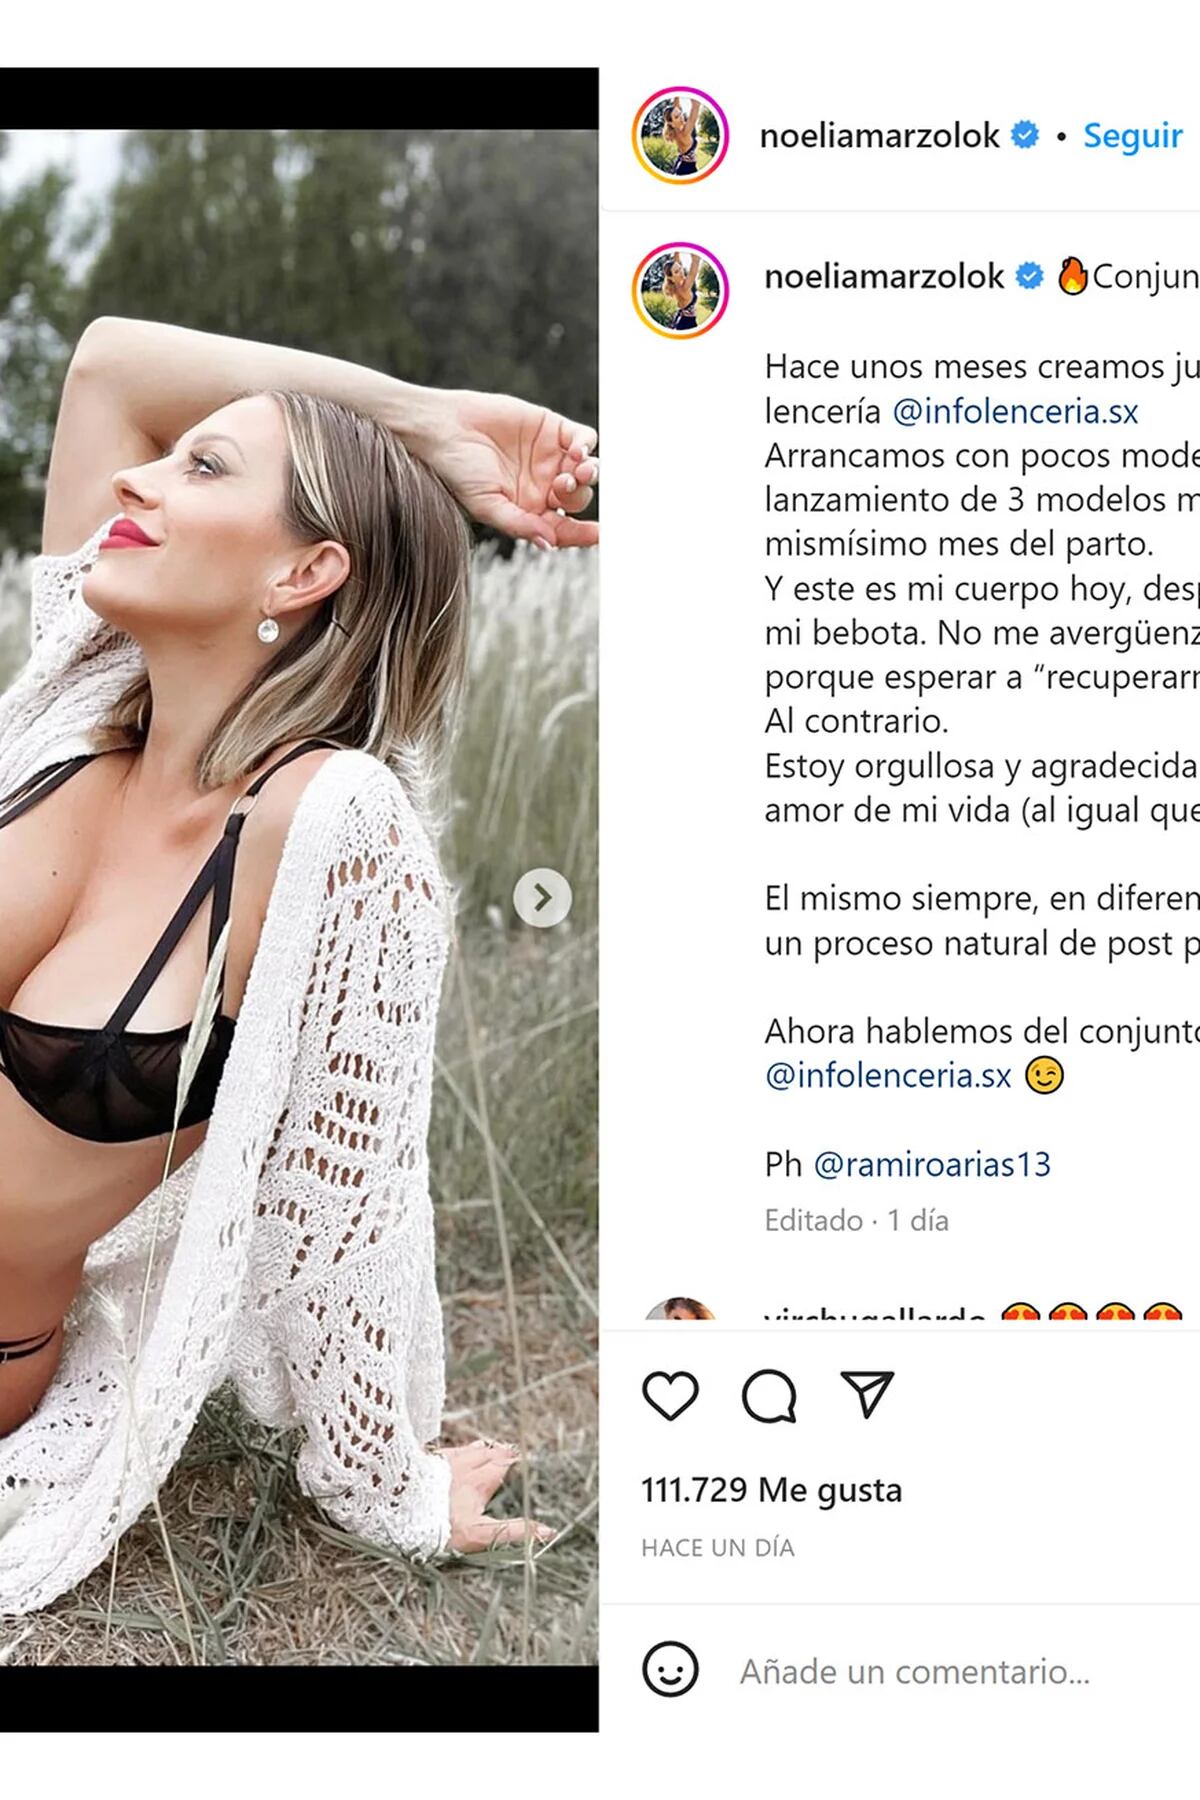 Noelia Marzol fotos en lencería días de ser mamá generó polémica - Infobae